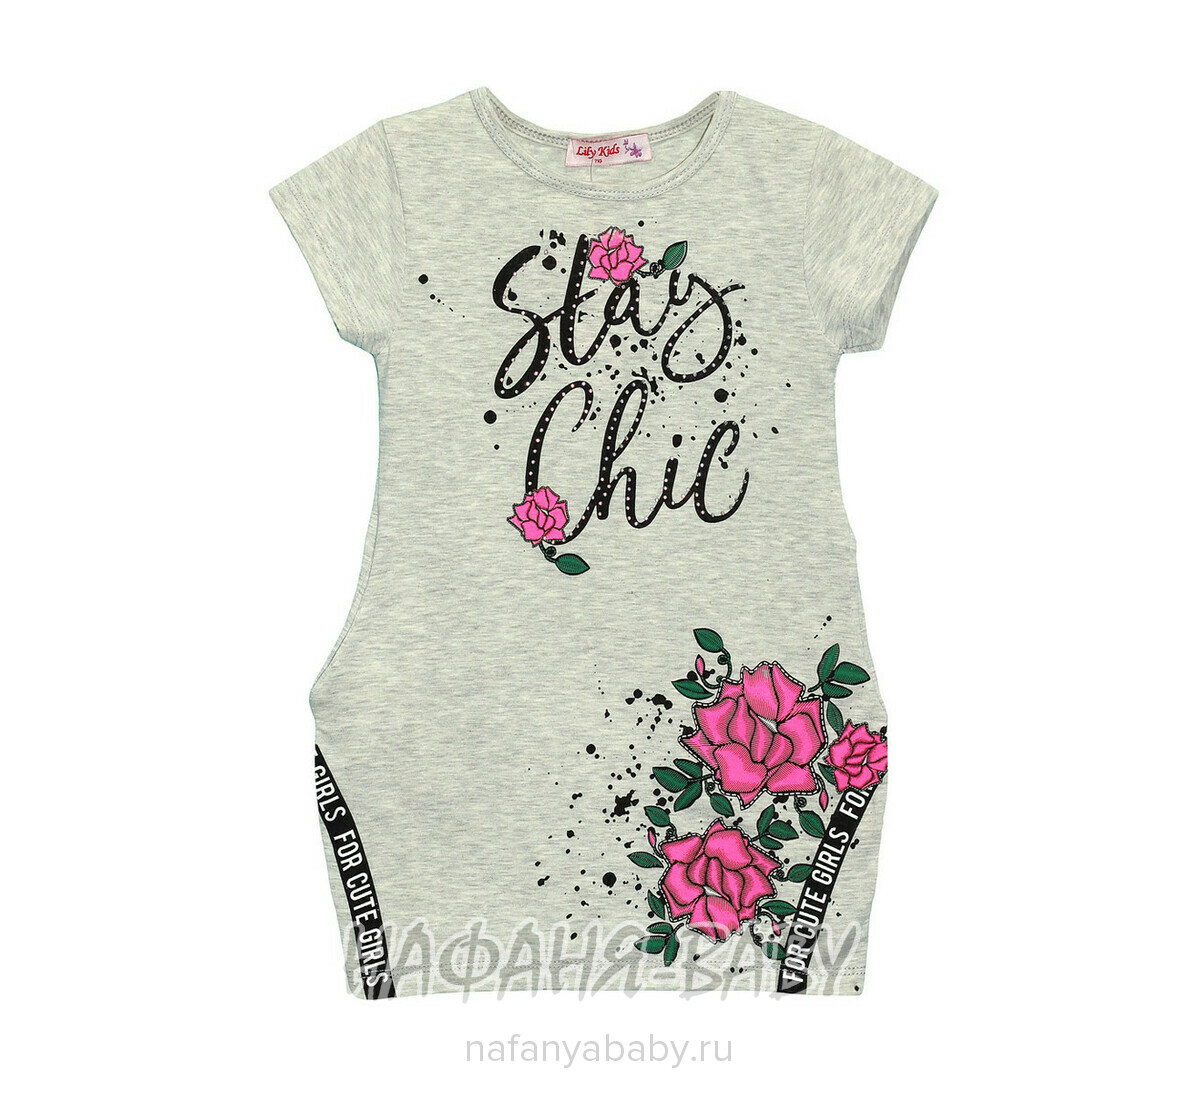 Детское платье-туника Lily Kids, купить в интернет магазине Нафаня. арт: 4505.